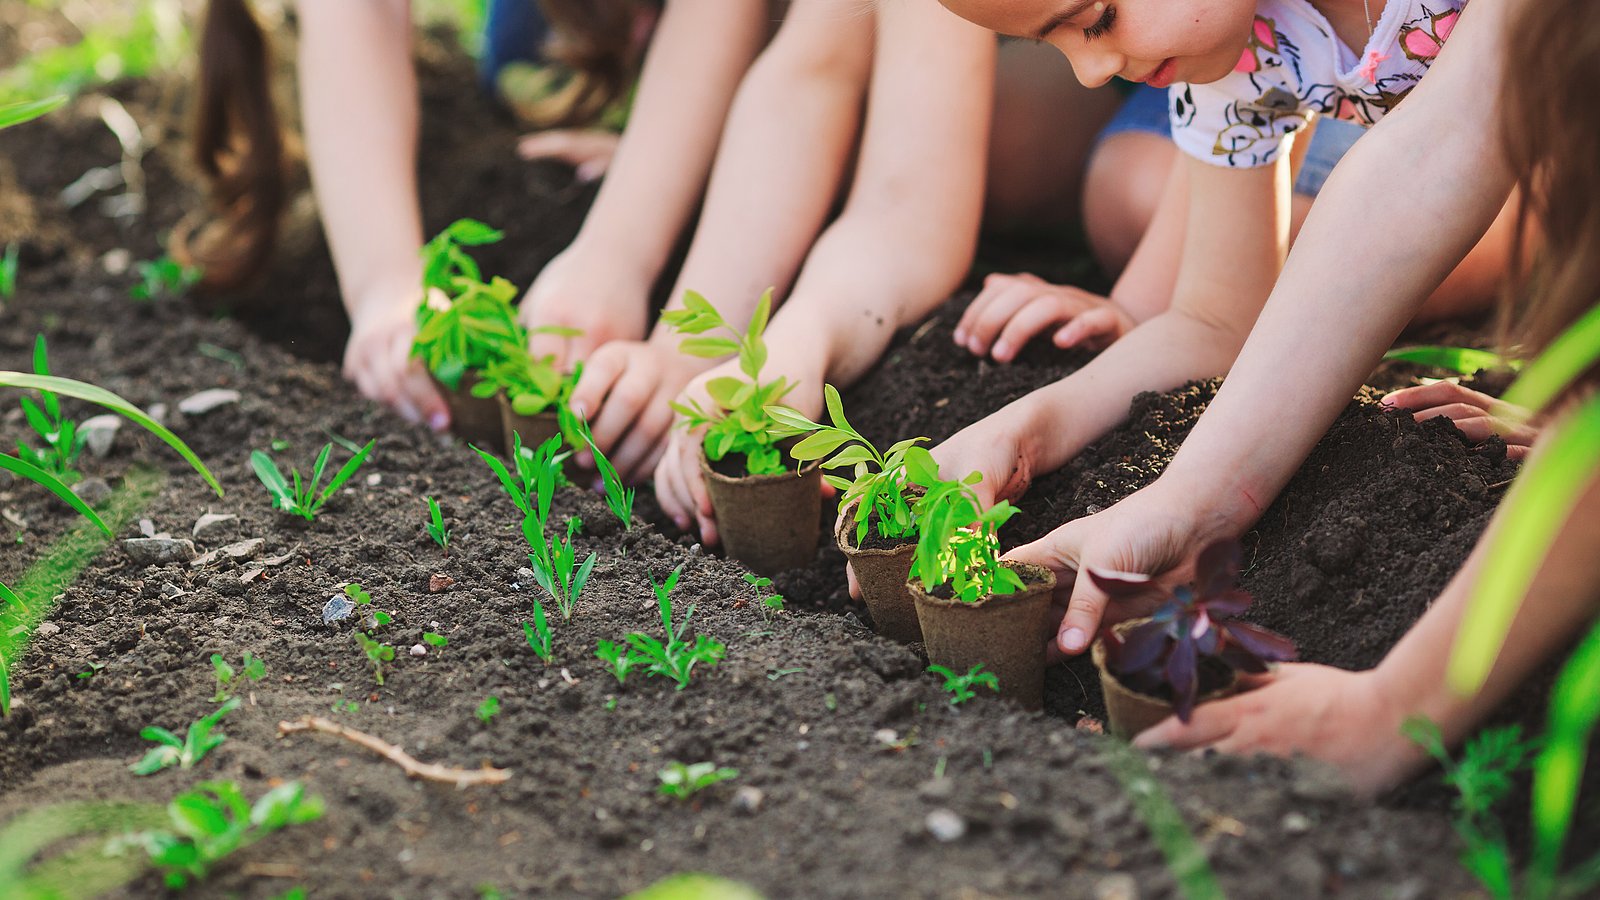 Mehrere Kinder knien auf dem Ackerboden und pflanzen Kräuter- und Gemüsesetzlinge, die noch in den Anzuchttöpfen aus Pappe stecken. 